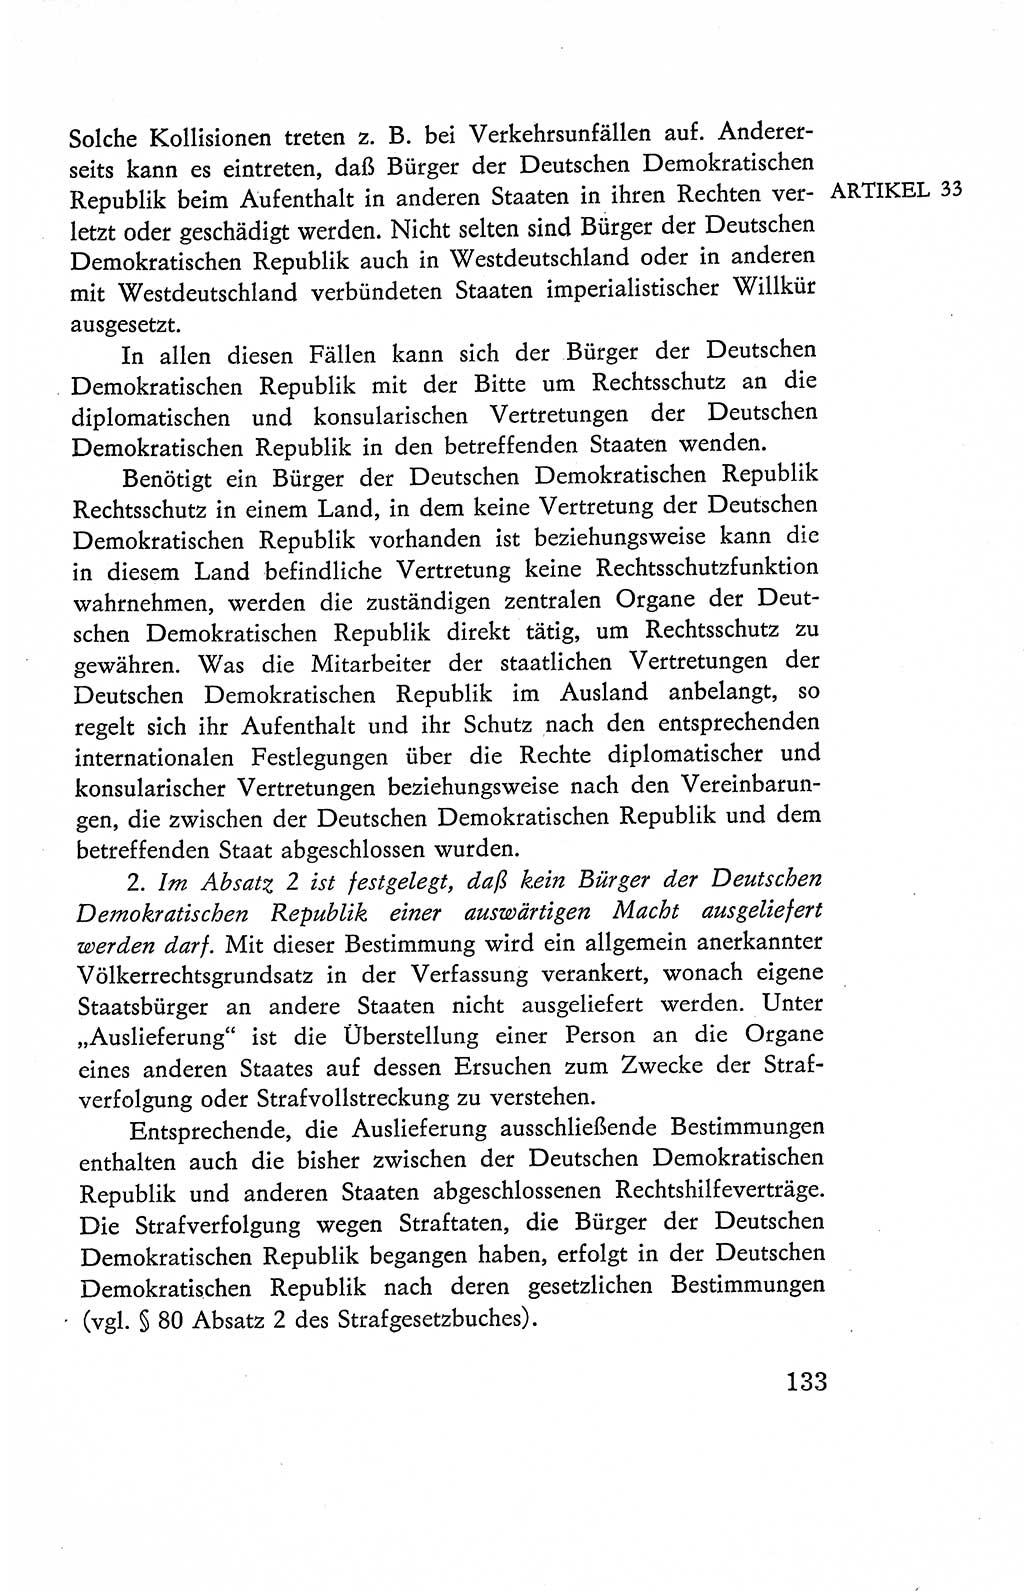 Verfassung der Deutschen Demokratischen Republik (DDR), Dokumente, Kommentar 1969, Band 2, Seite 133 (Verf. DDR Dok. Komm. 1969, Bd. 2, S. 133)